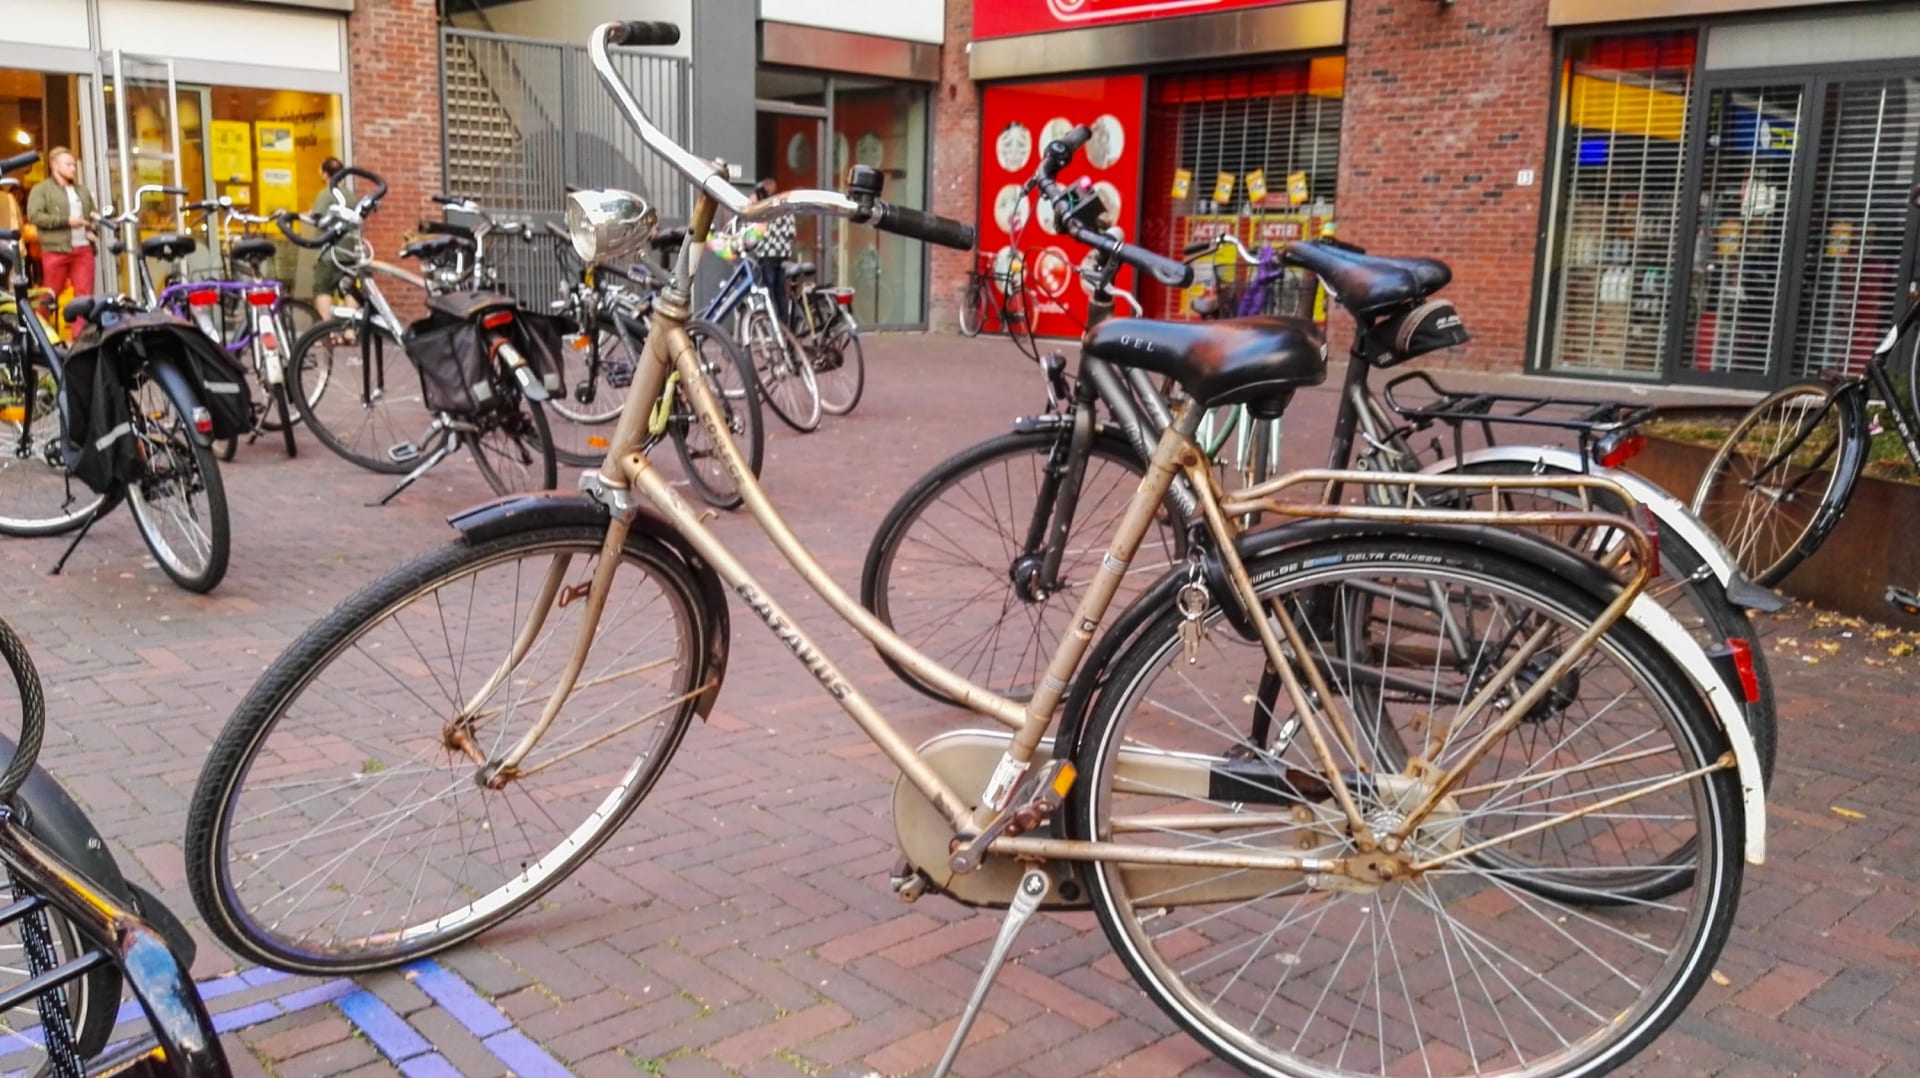 Auta v Nizozemsku nefrčí. Základem je kolo.